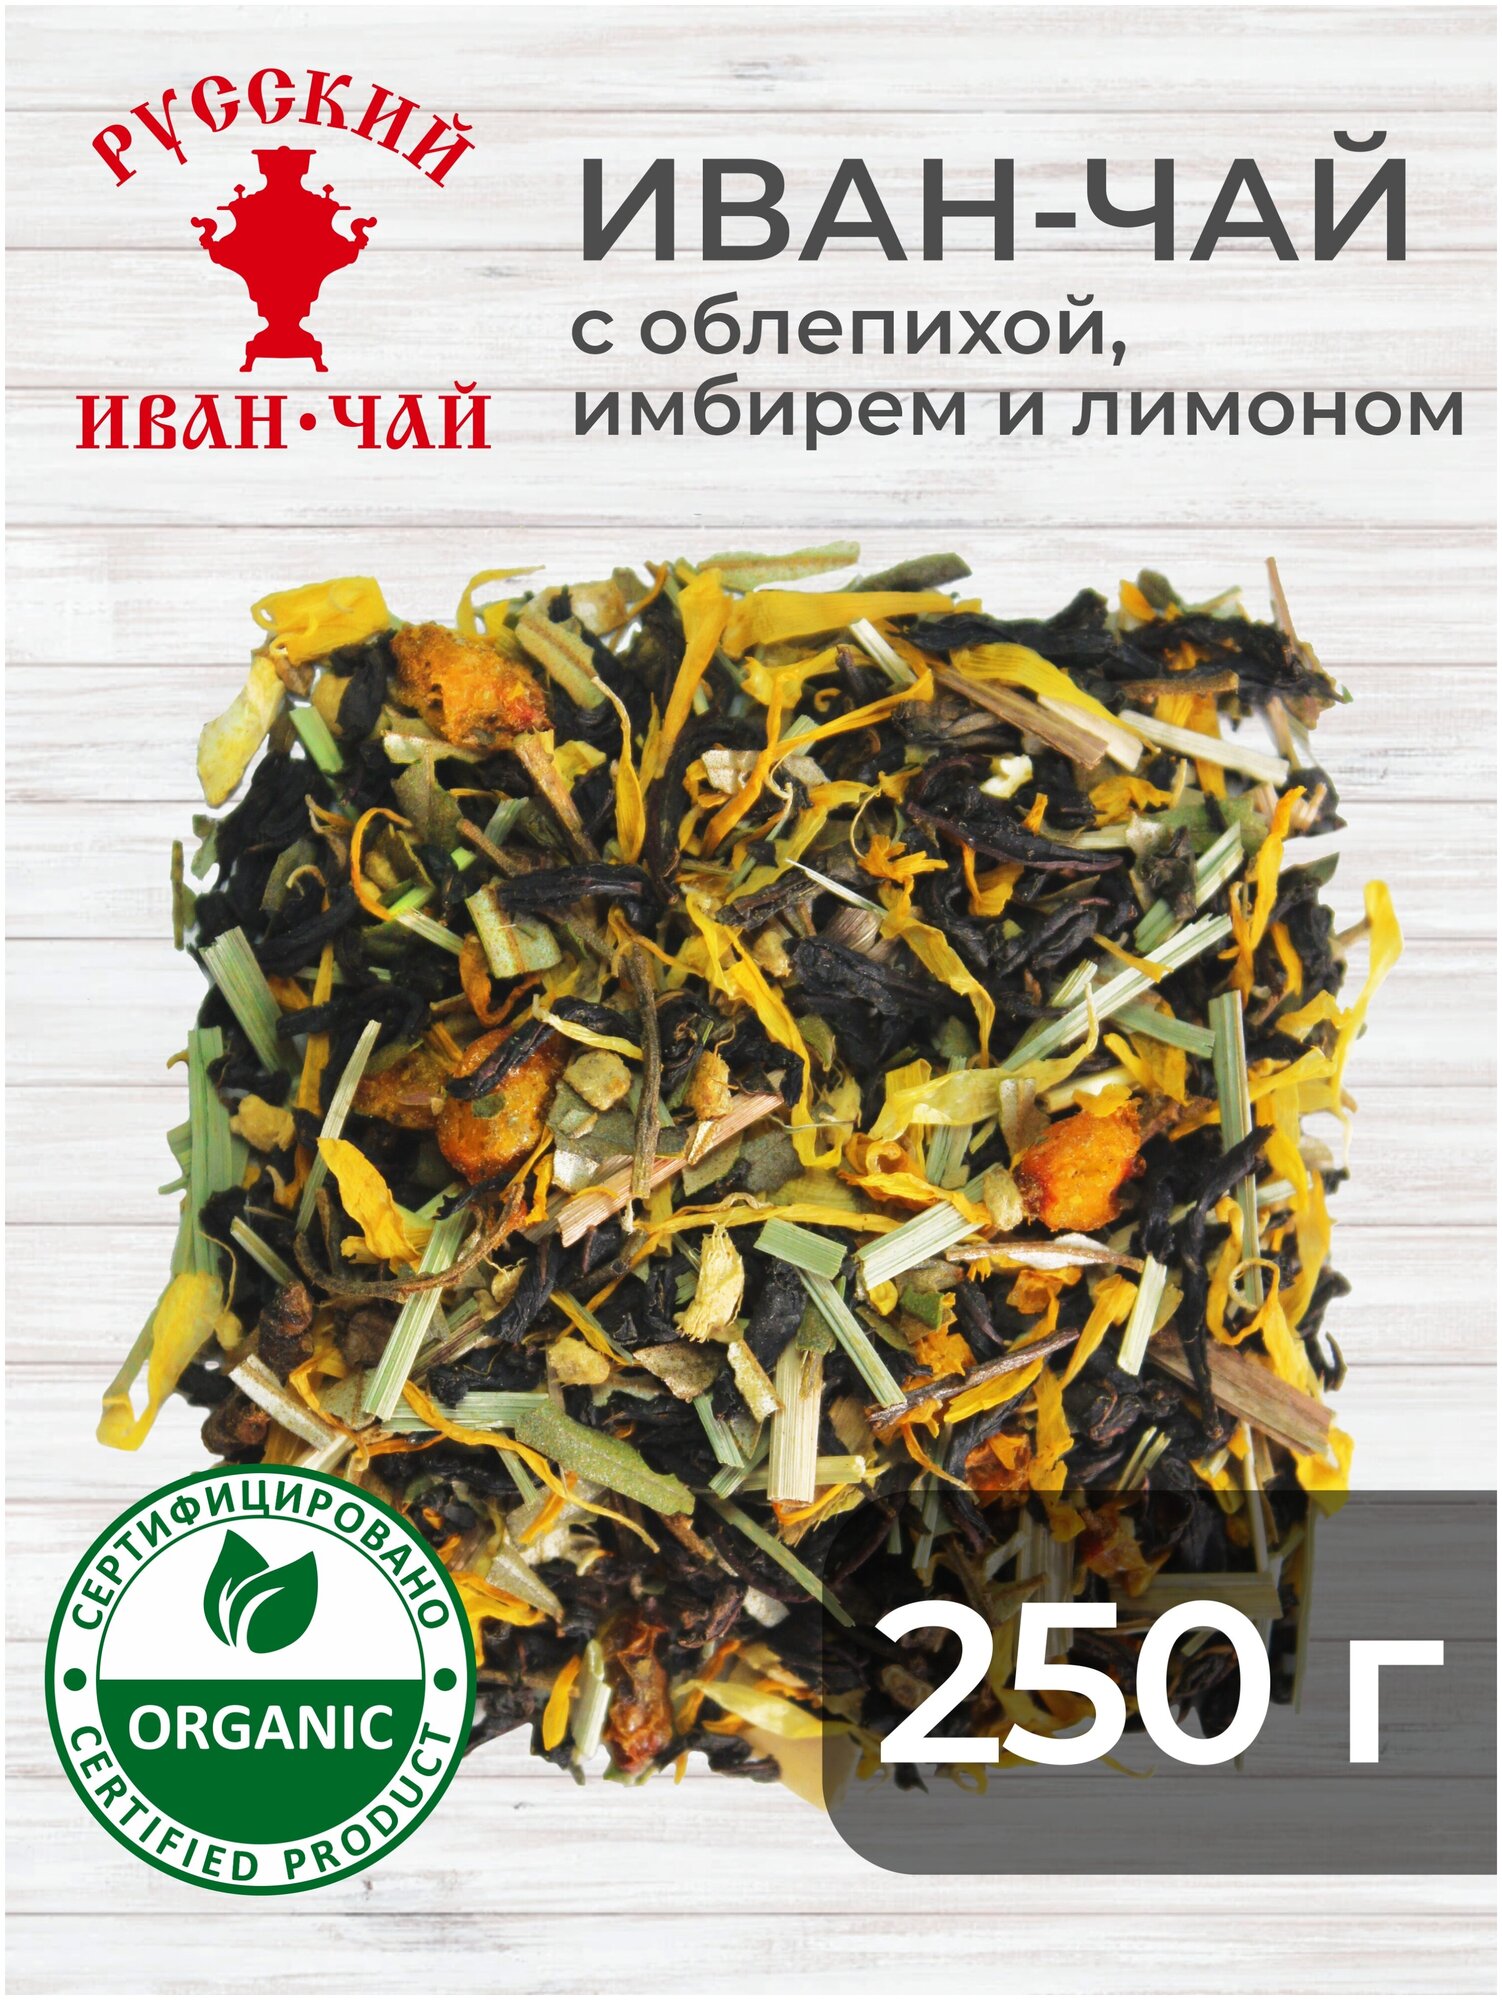 Иван-чай c облепихой, имбирем и лимоном, 250 грамм, ферментированный листовой иван-чай с листом и ягодами облепихи, имбирем и лимоном